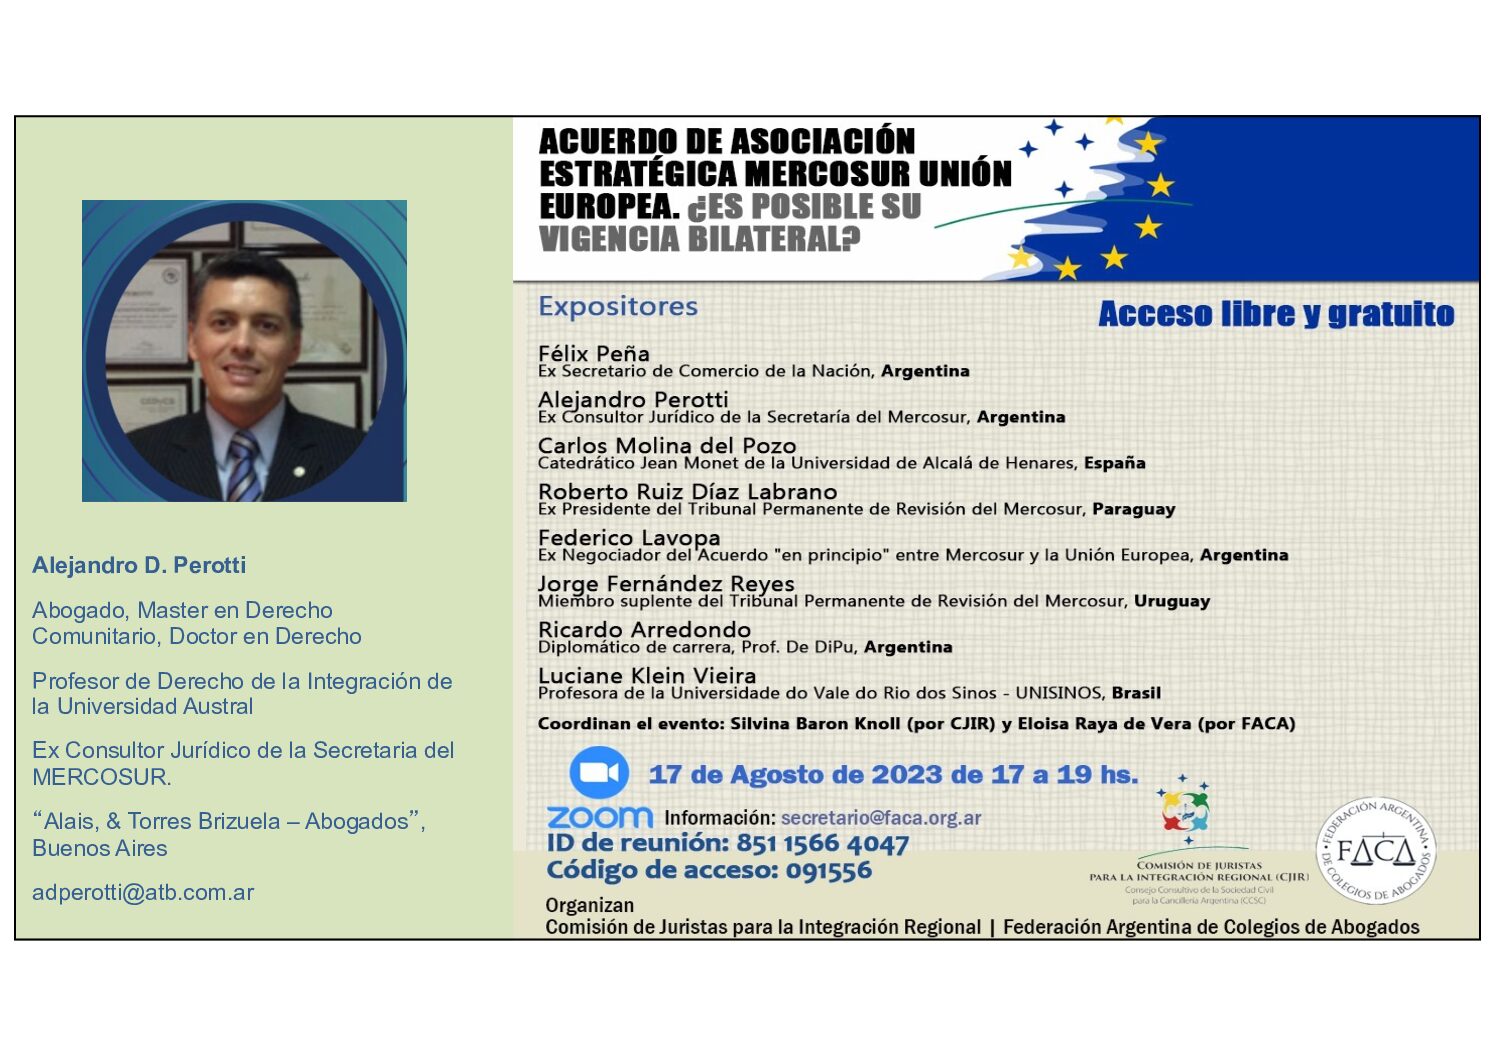 Webinar sobre el Acuerdo de Asociación Estratégica Mercosur-Unión Europea